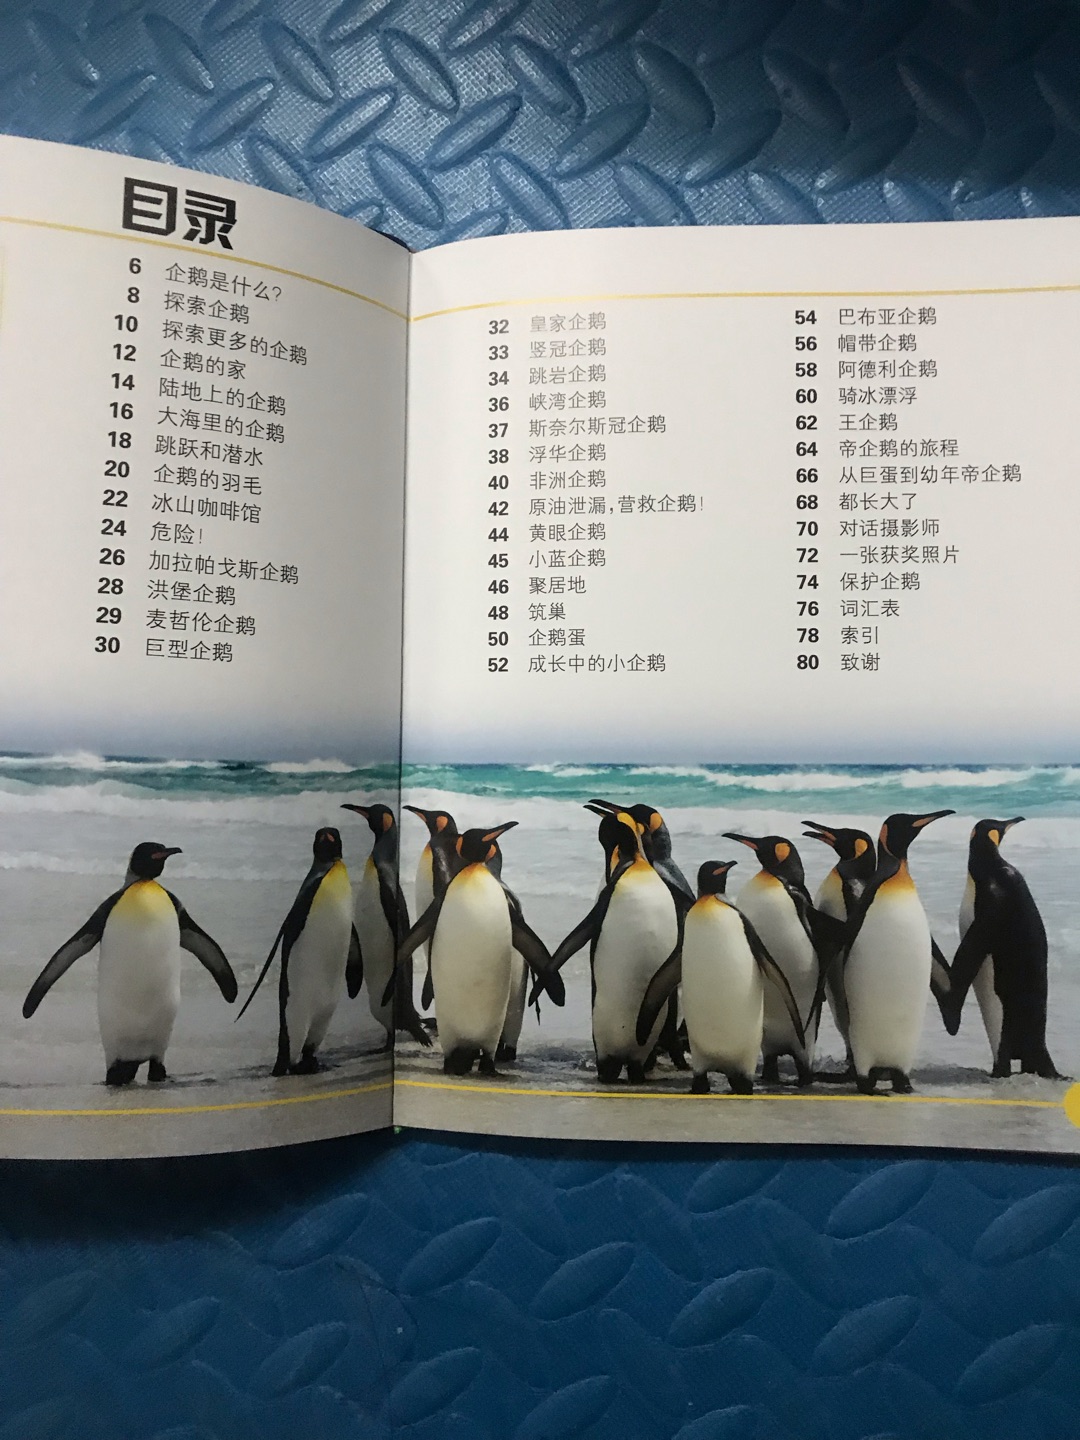 孩子喜欢企鹅，这本书有很多企鹅照片